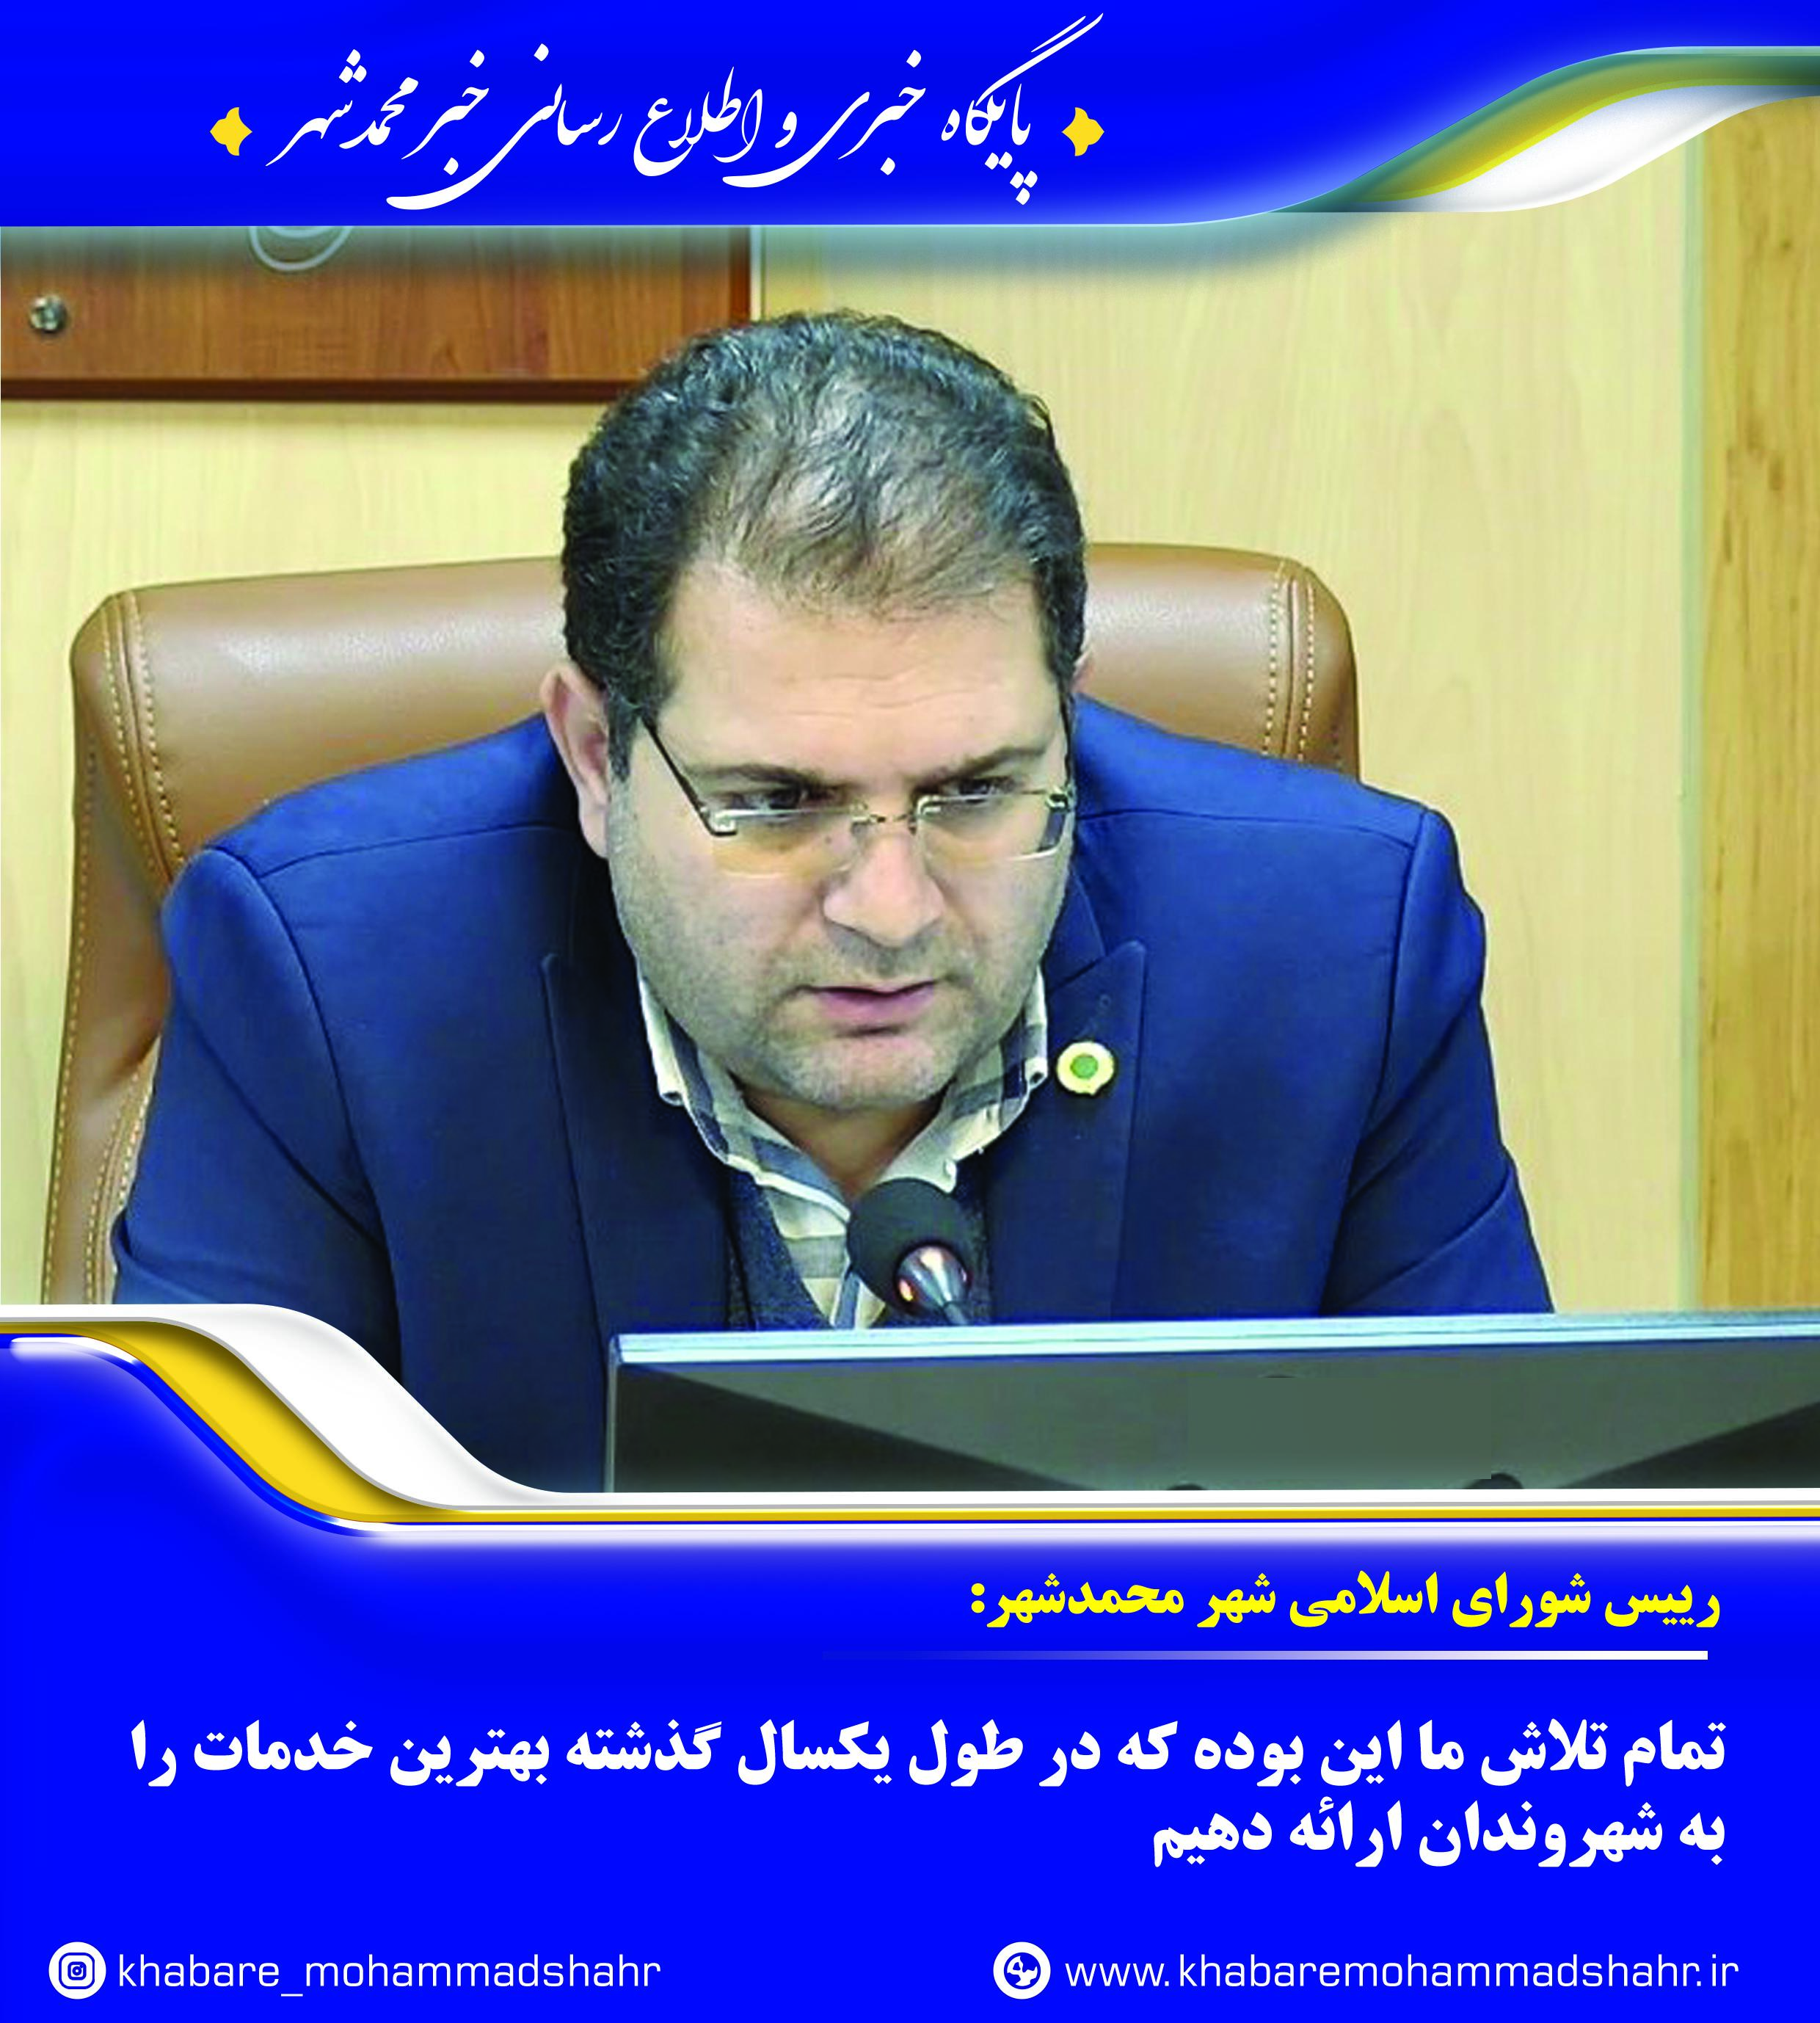 رییس شورای شهر محمدشهر:تمام تلاش ما این بوده که در طول یکسال گذشته بهترین خدمات را به شهروندان ارائه دهیم